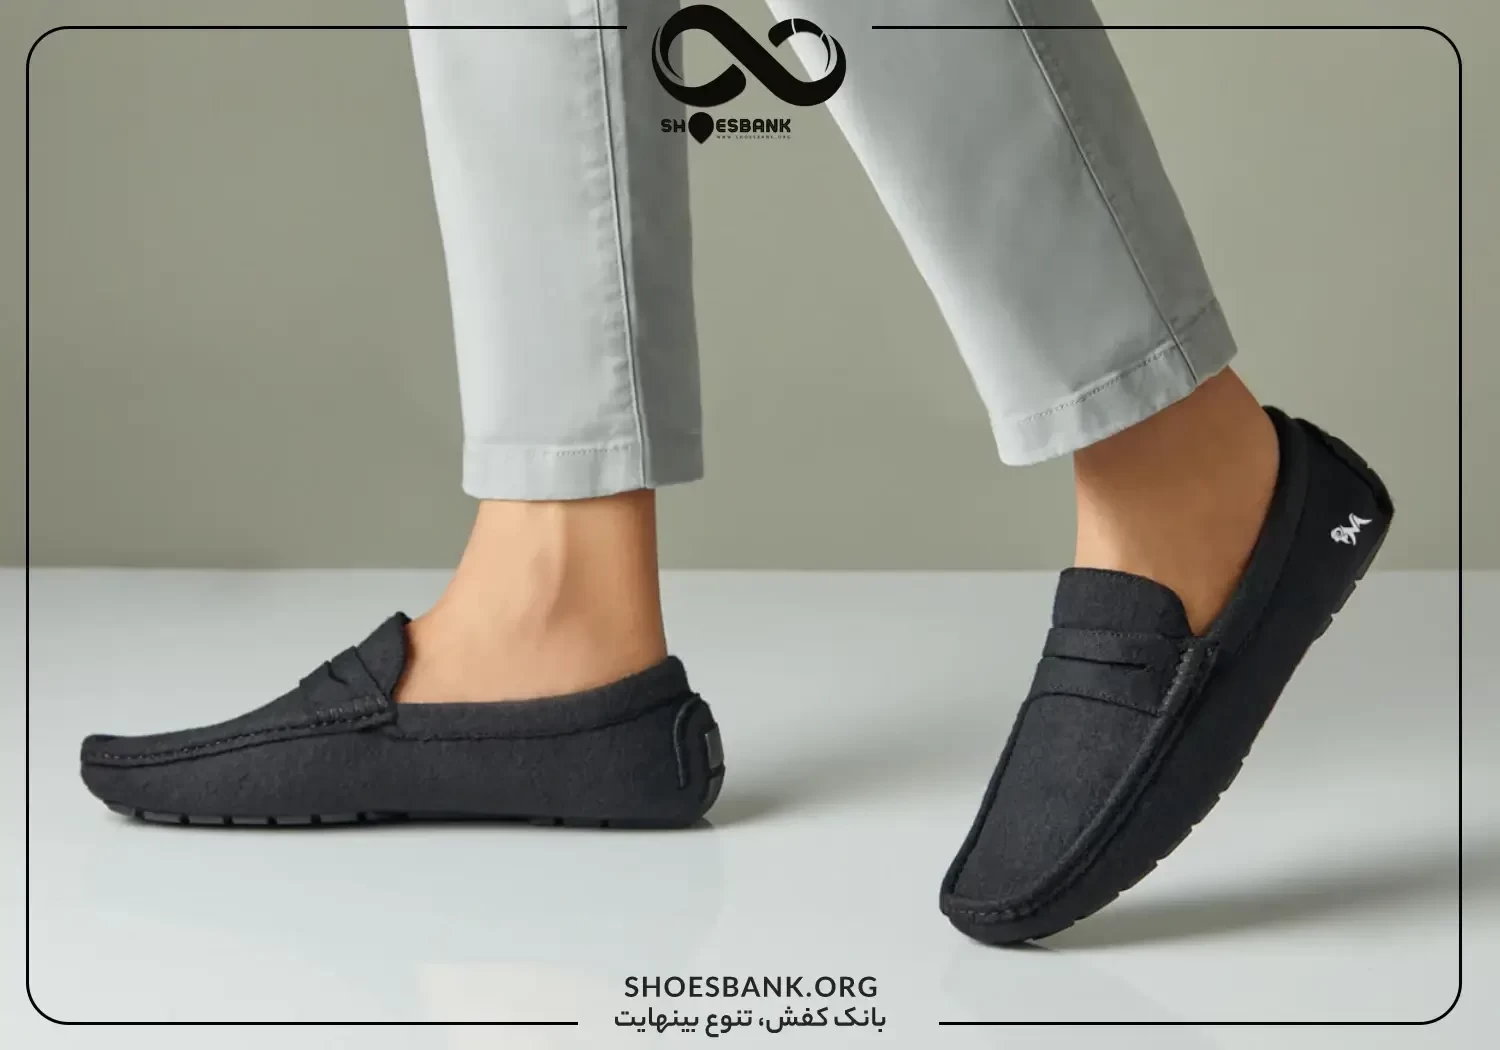 کفش کالج: مشخصات کفش های کالج و معرفی بهترین انواع کفش کالج